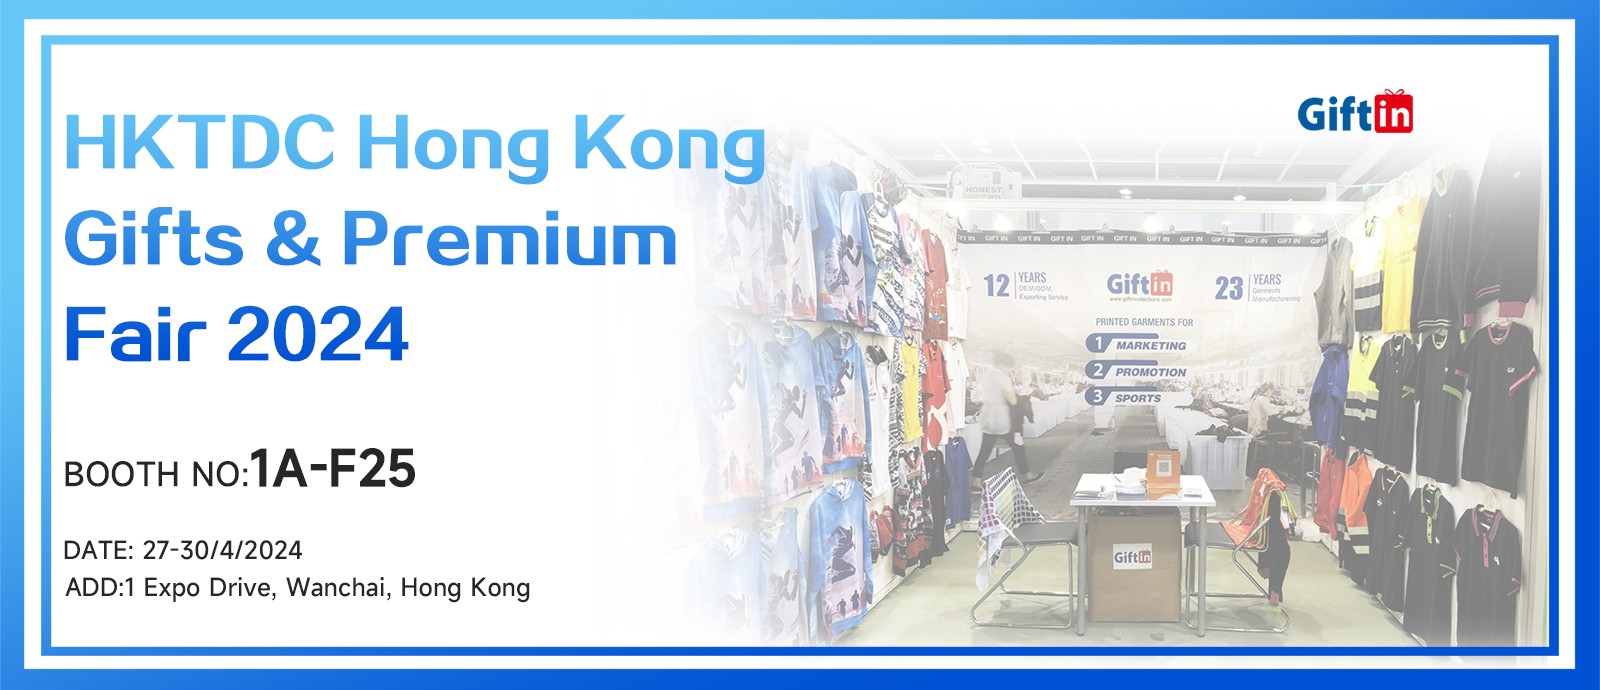 Salon du cadeau et des primes HKDTC de Hong Kong 2024